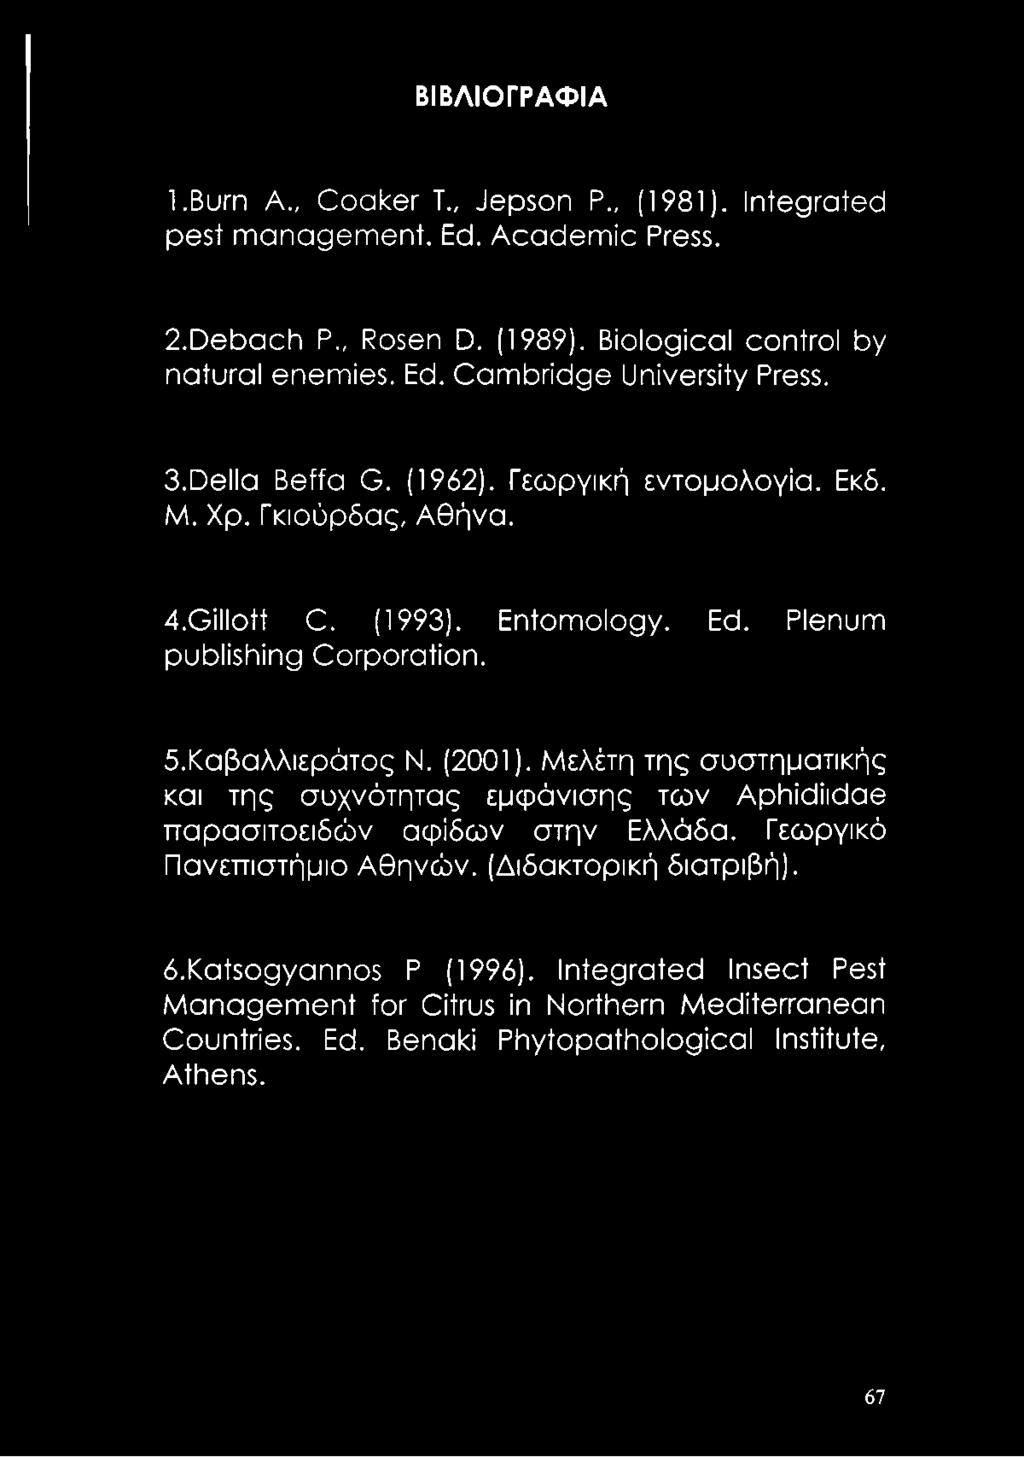 Plenum publishing Corporation. δ.καβαλλιεράτος Ν. (2001). Μελέτη της συστηματικής και της συχνότητας εμφάνισης των ΑρΙηίάίκ^αθ παρασιτοειδών αψίδων στην Ελλάδα.